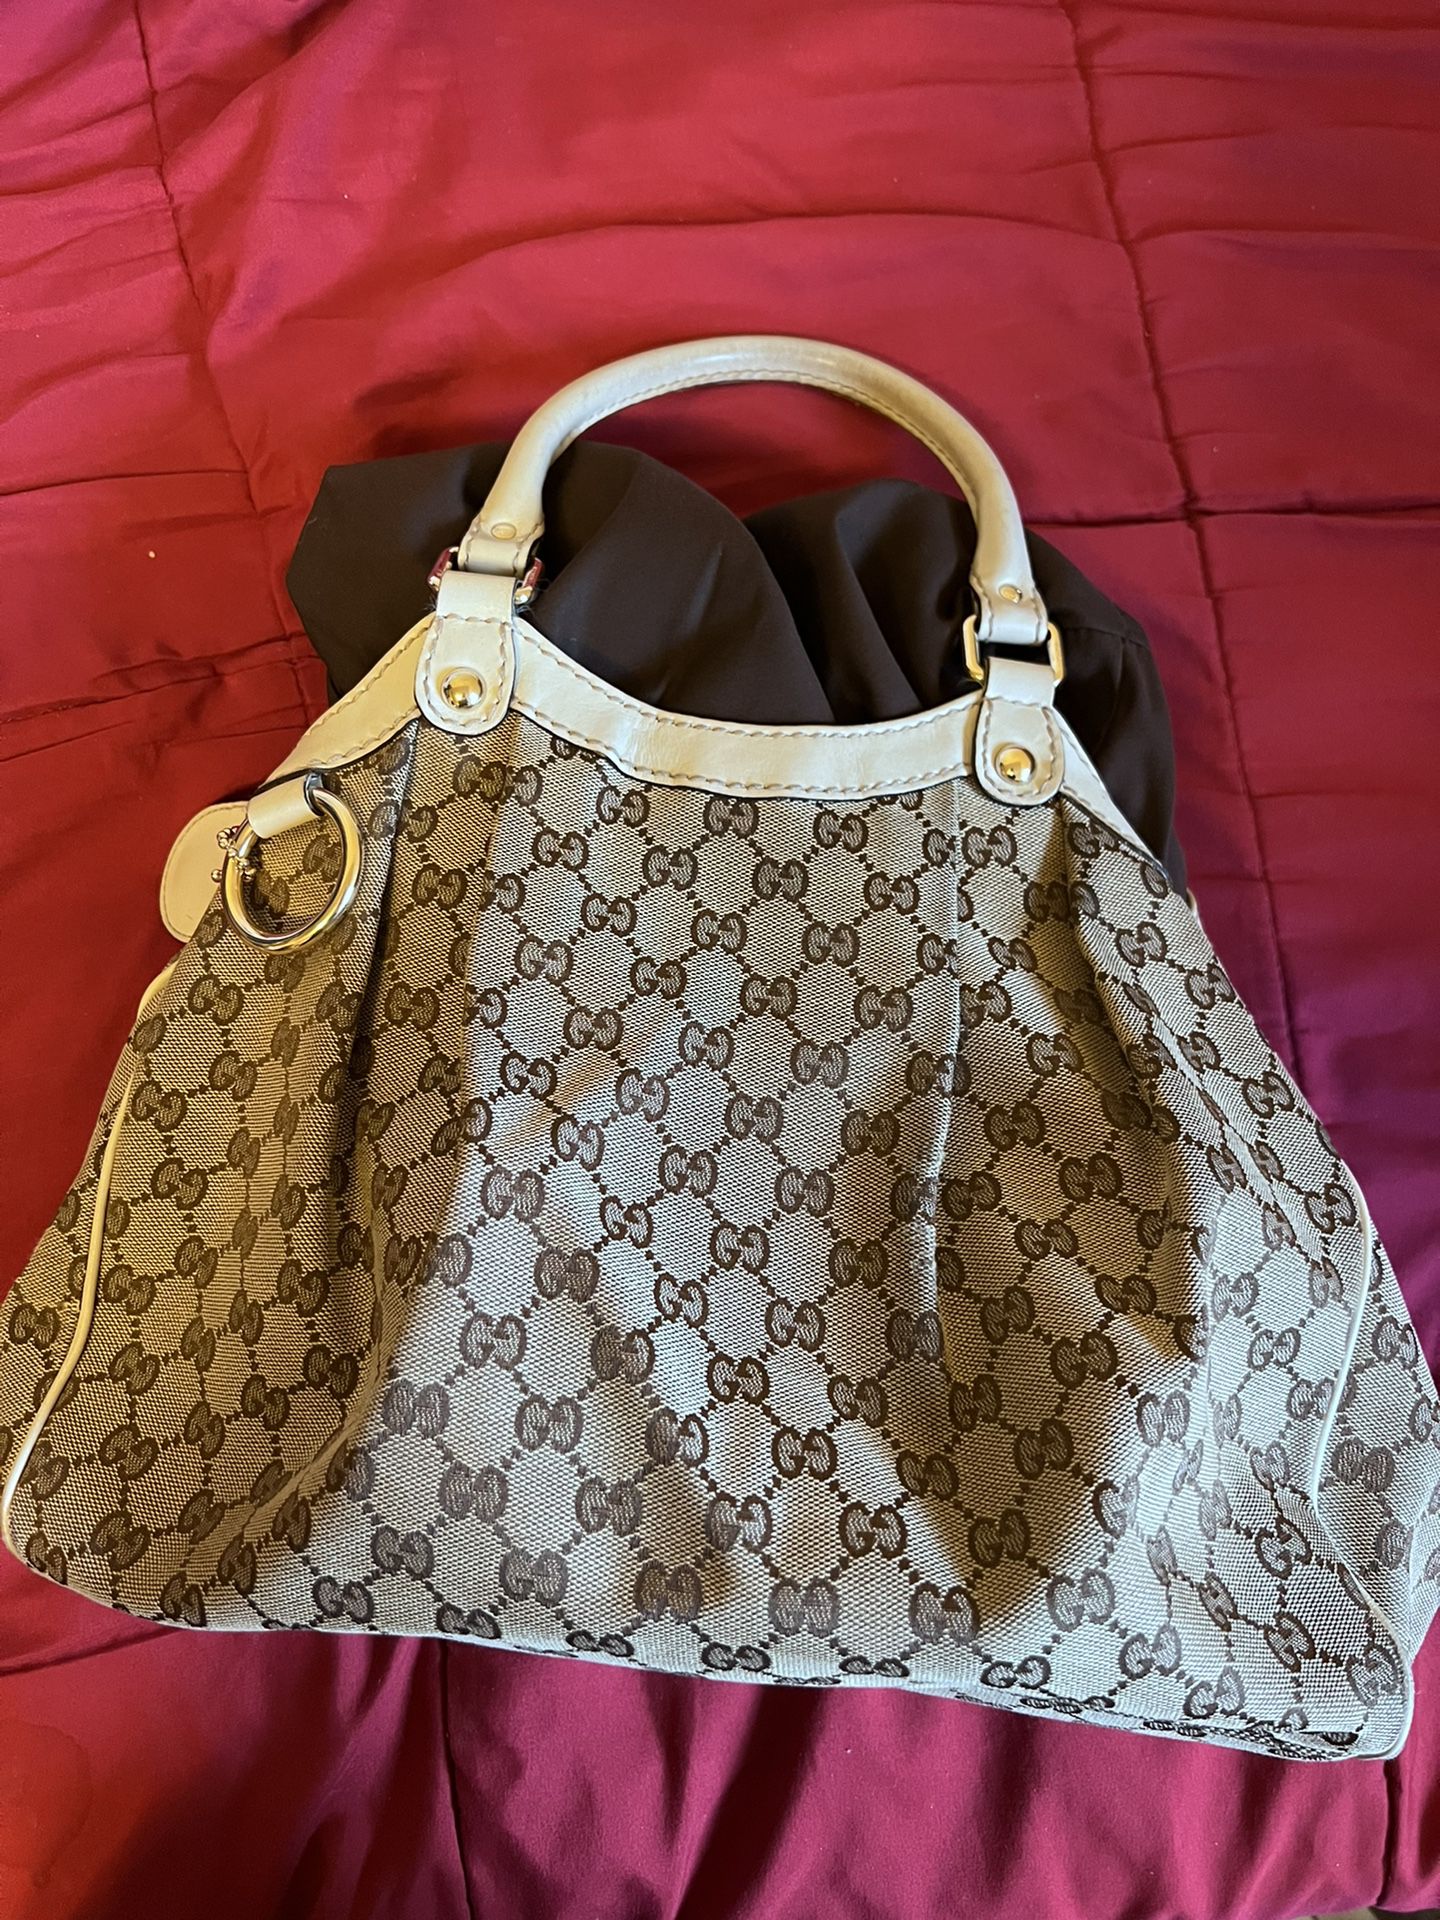 Gucci Sukey Tote Bag